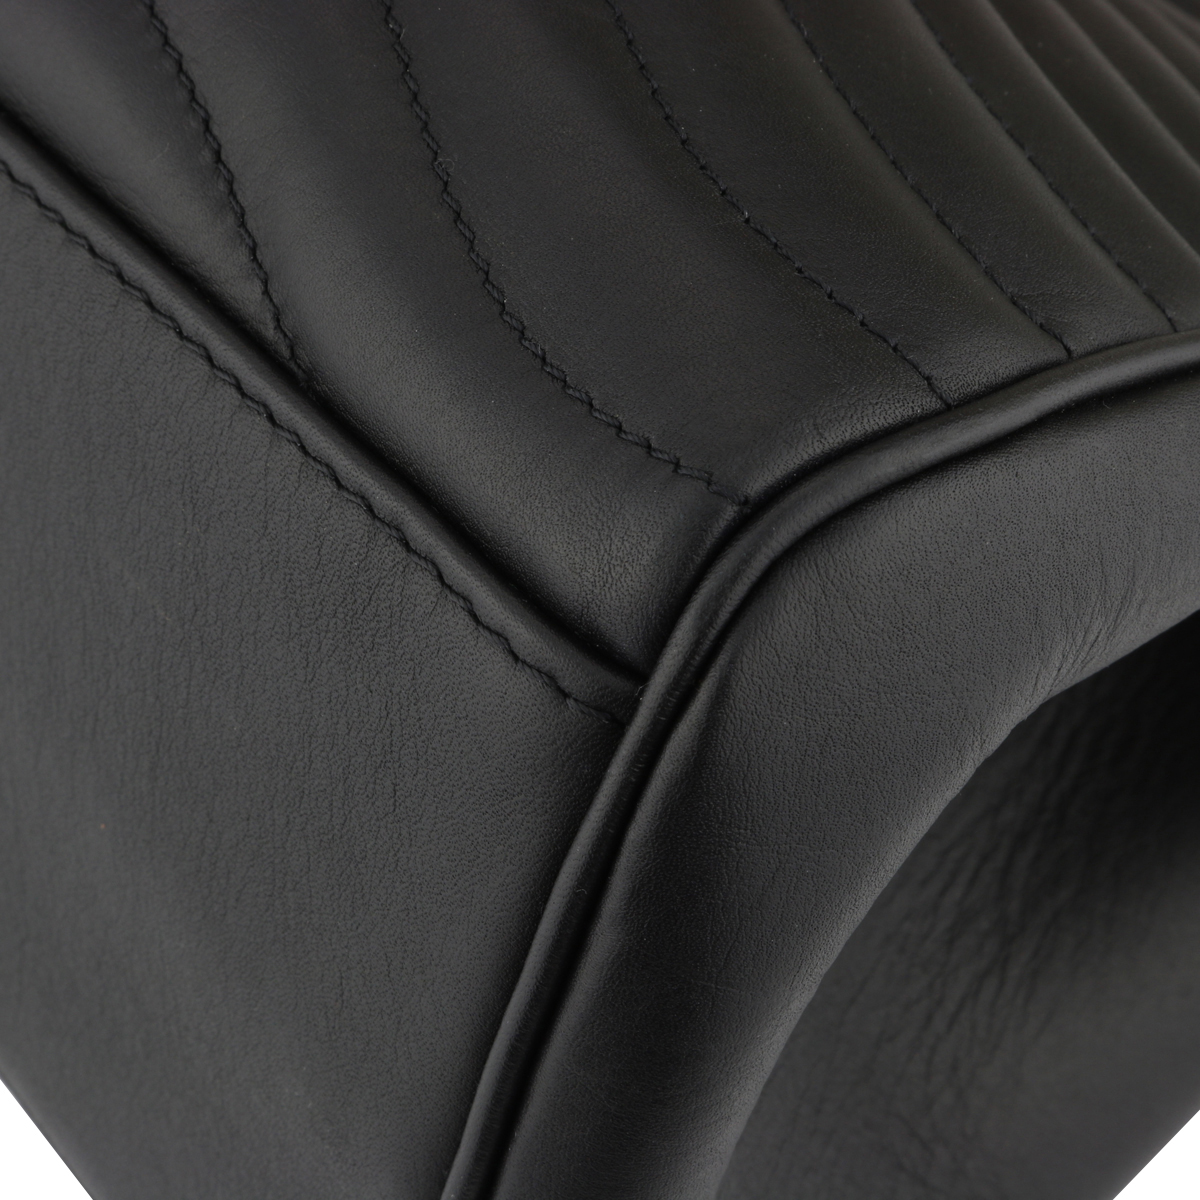 M51496 Louis Vuitton 2018 Premium New Wave Chain Tote-Deep-black Noir